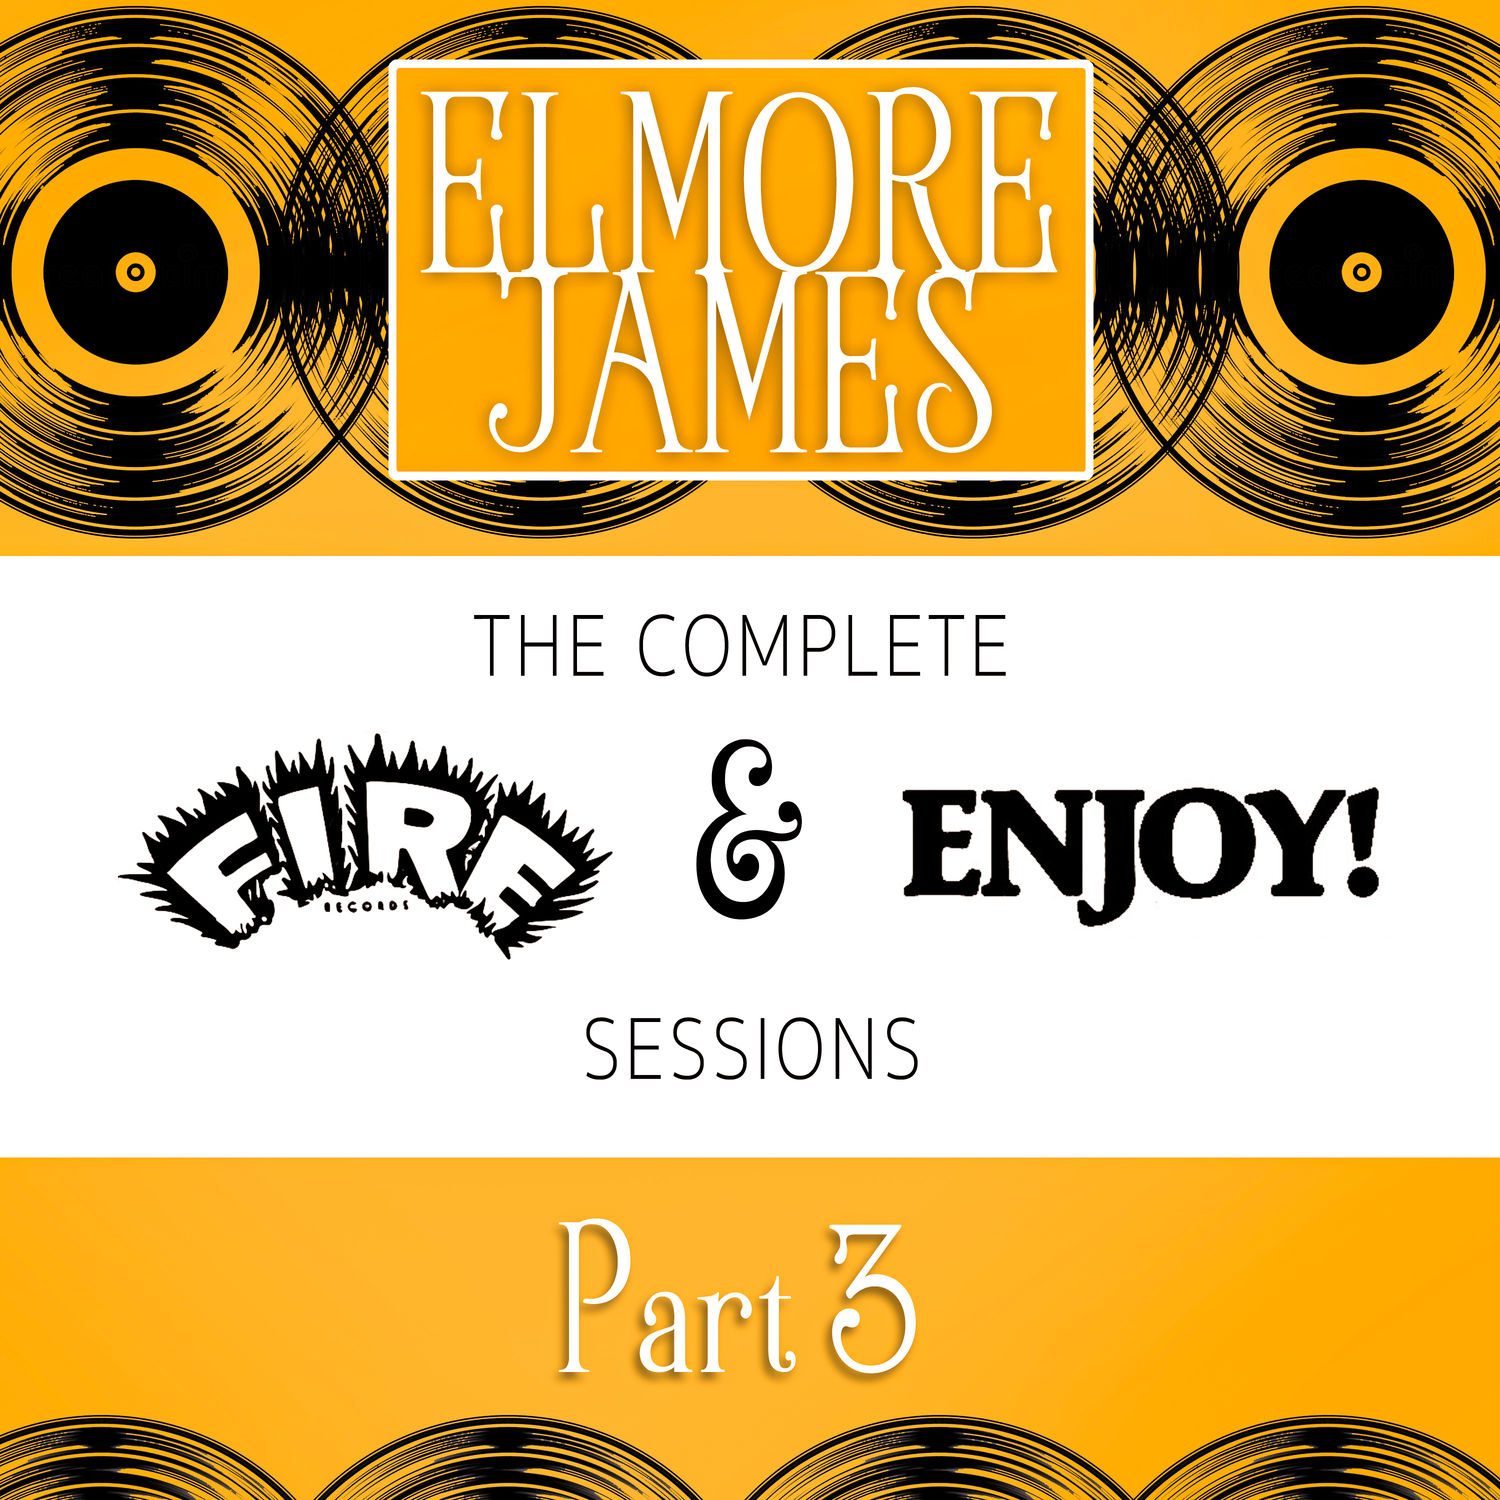 Elmore James – The Complete Fire & Enjoy Sessions, Pt. 3 (1962/2021) [FLAC 24bit/96kHz]